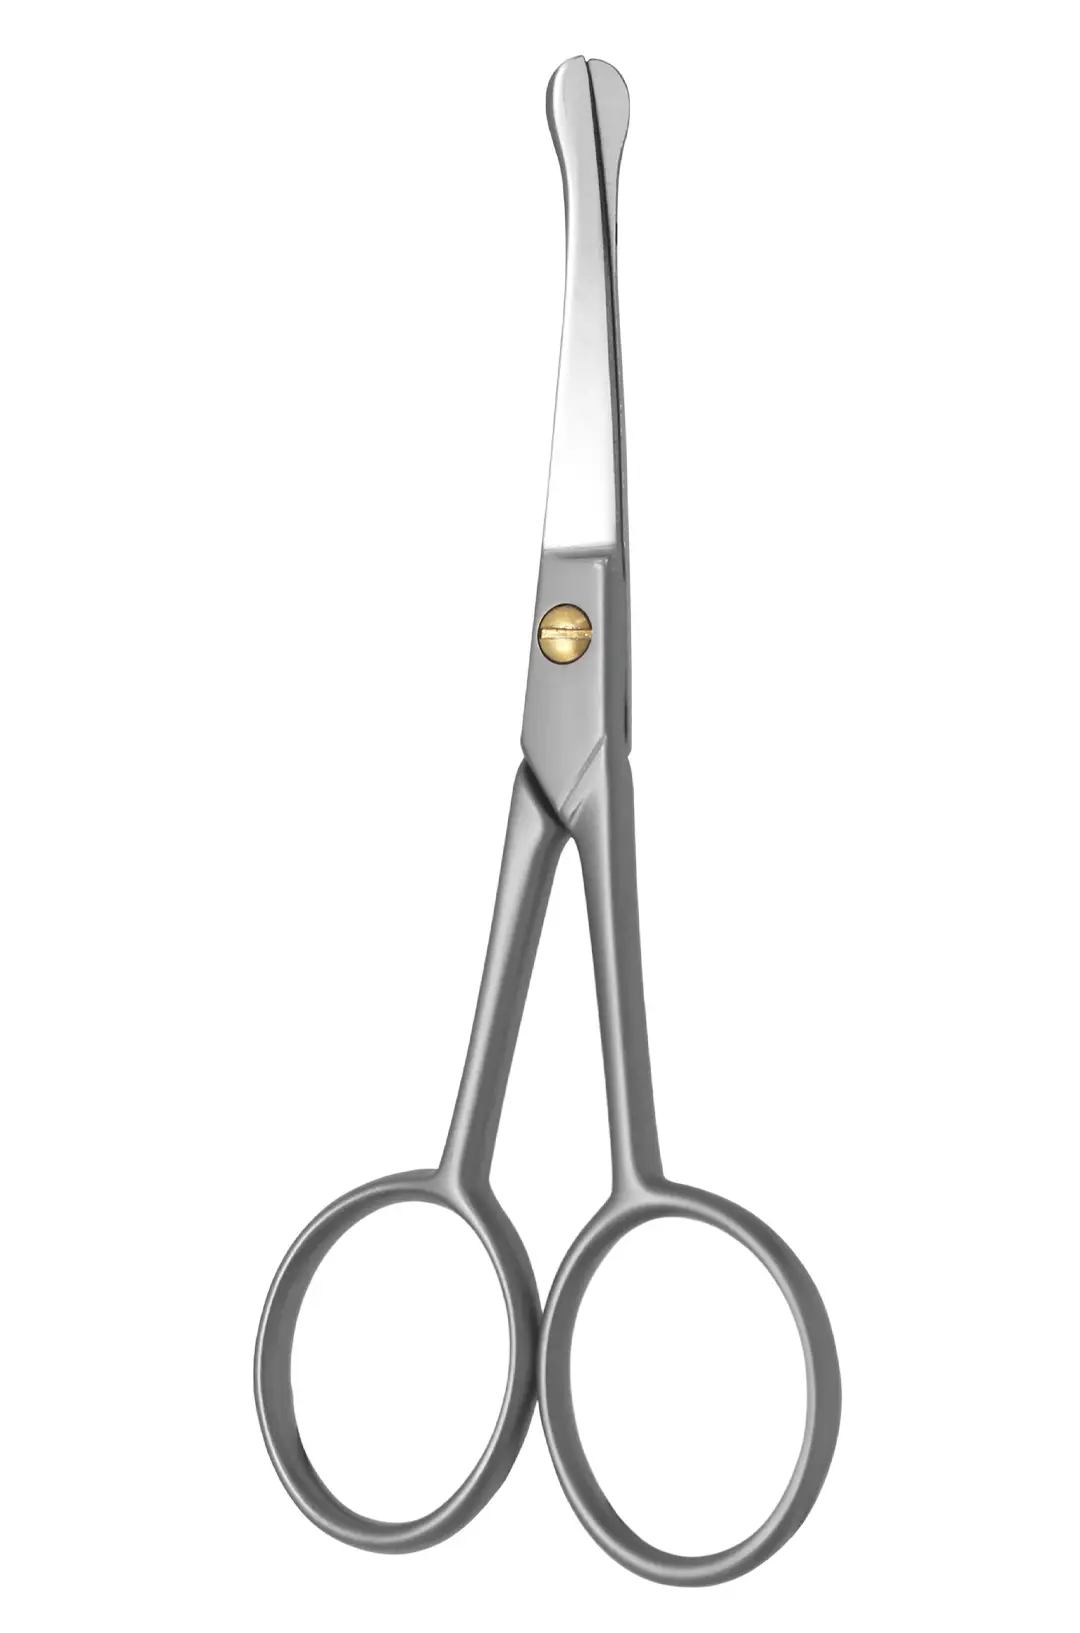 Excellent nose scissors 10.5 cm, curved cutting edge